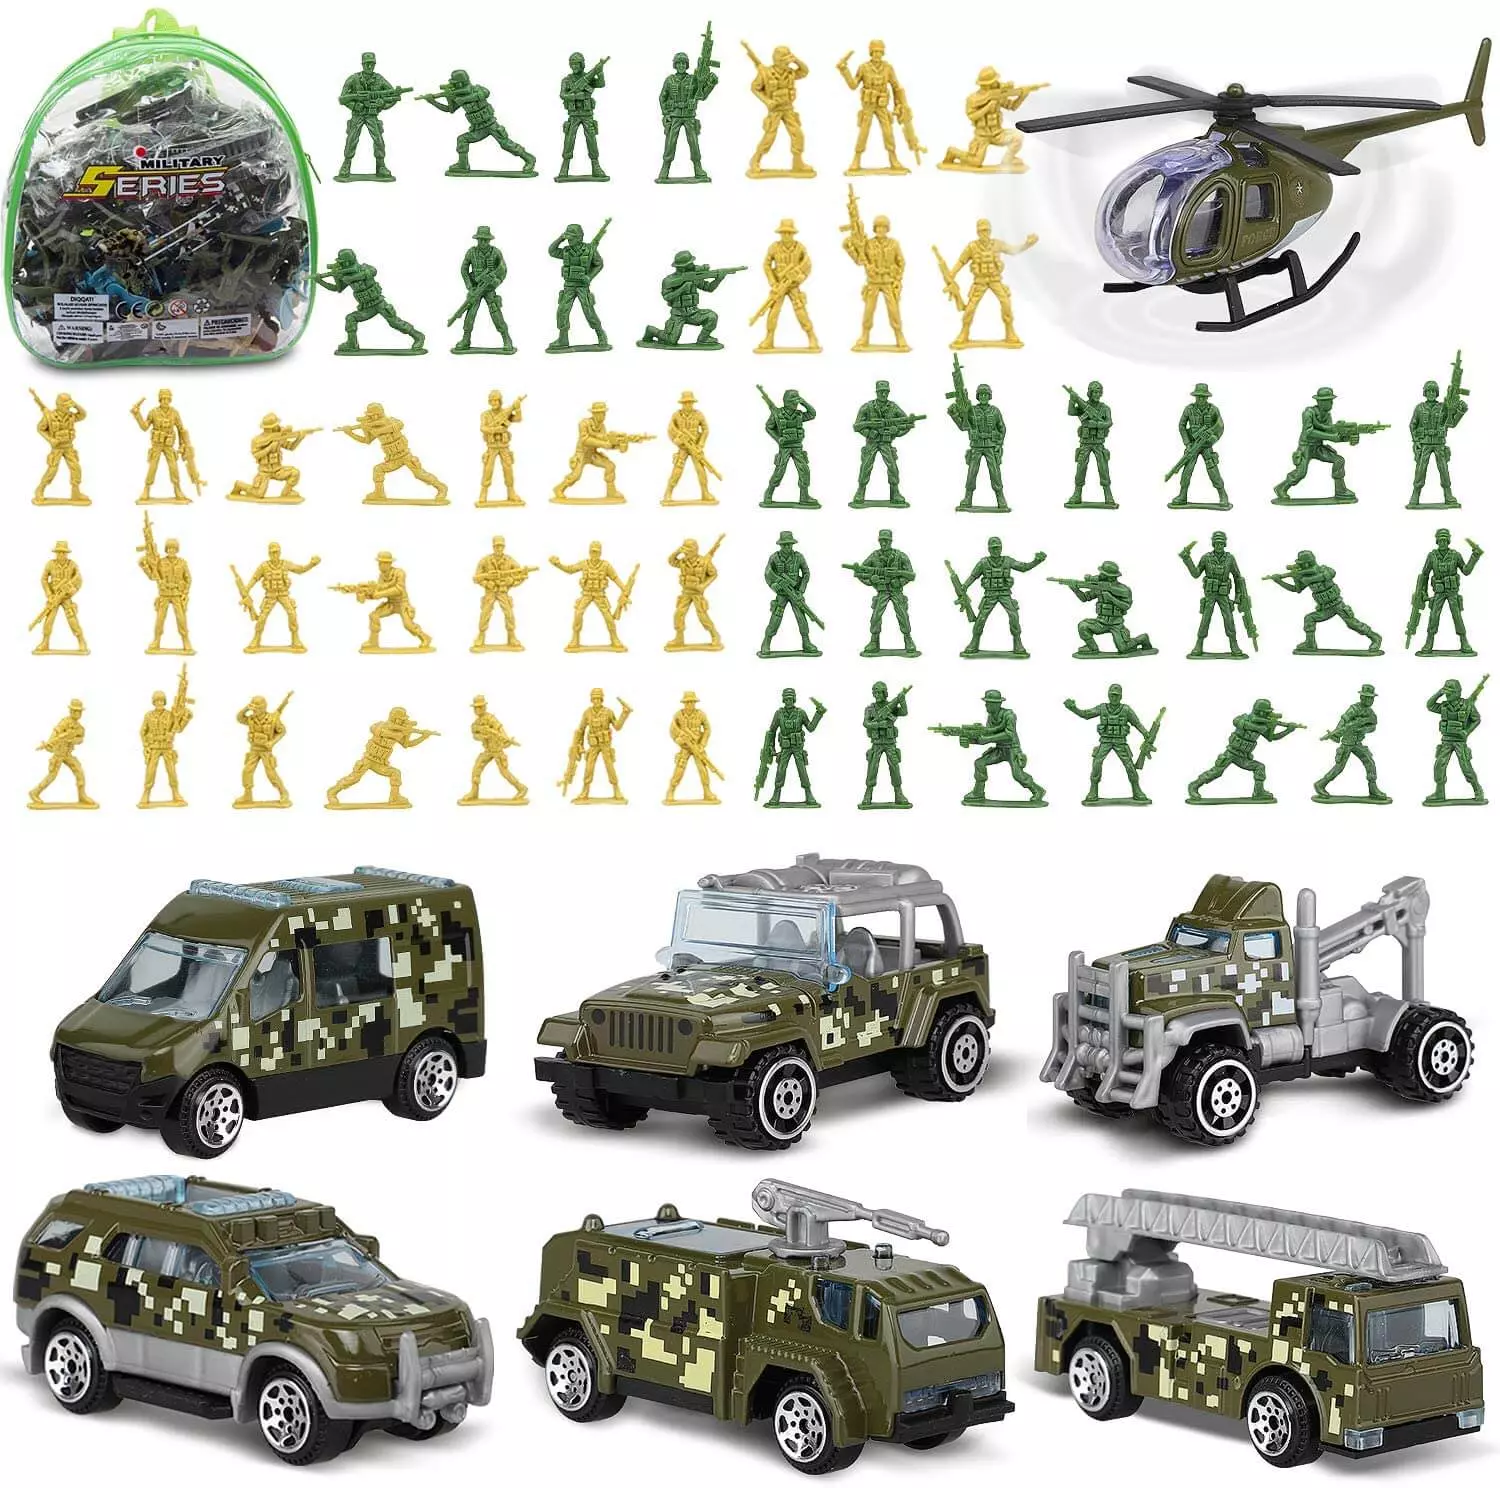 JOYIN Military Vehicles Toy Set of Friction Powered India